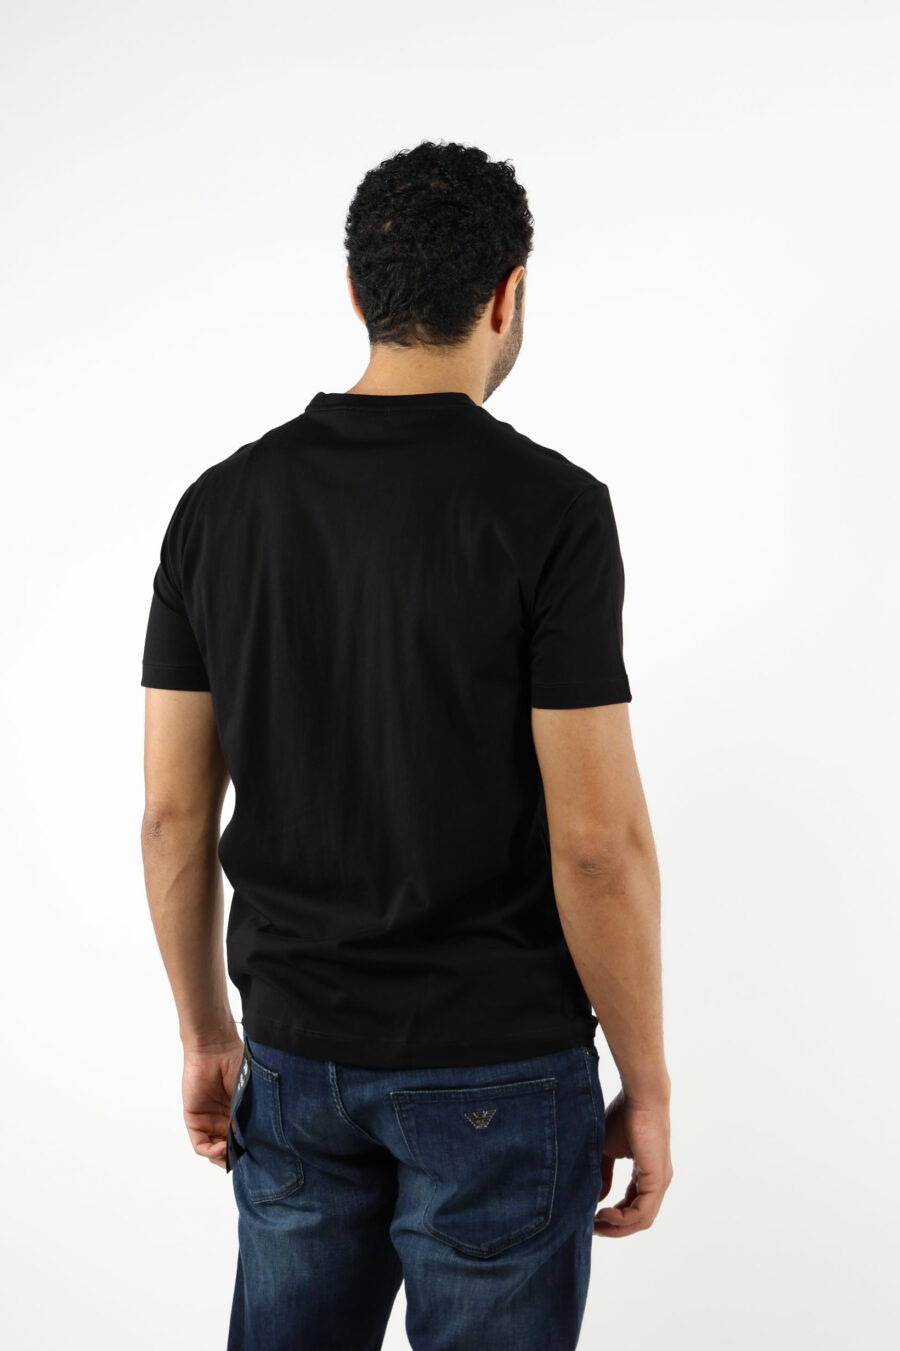 T-shirt noir avec minilogue "lux identity" noir sur plaque d'or - 110815